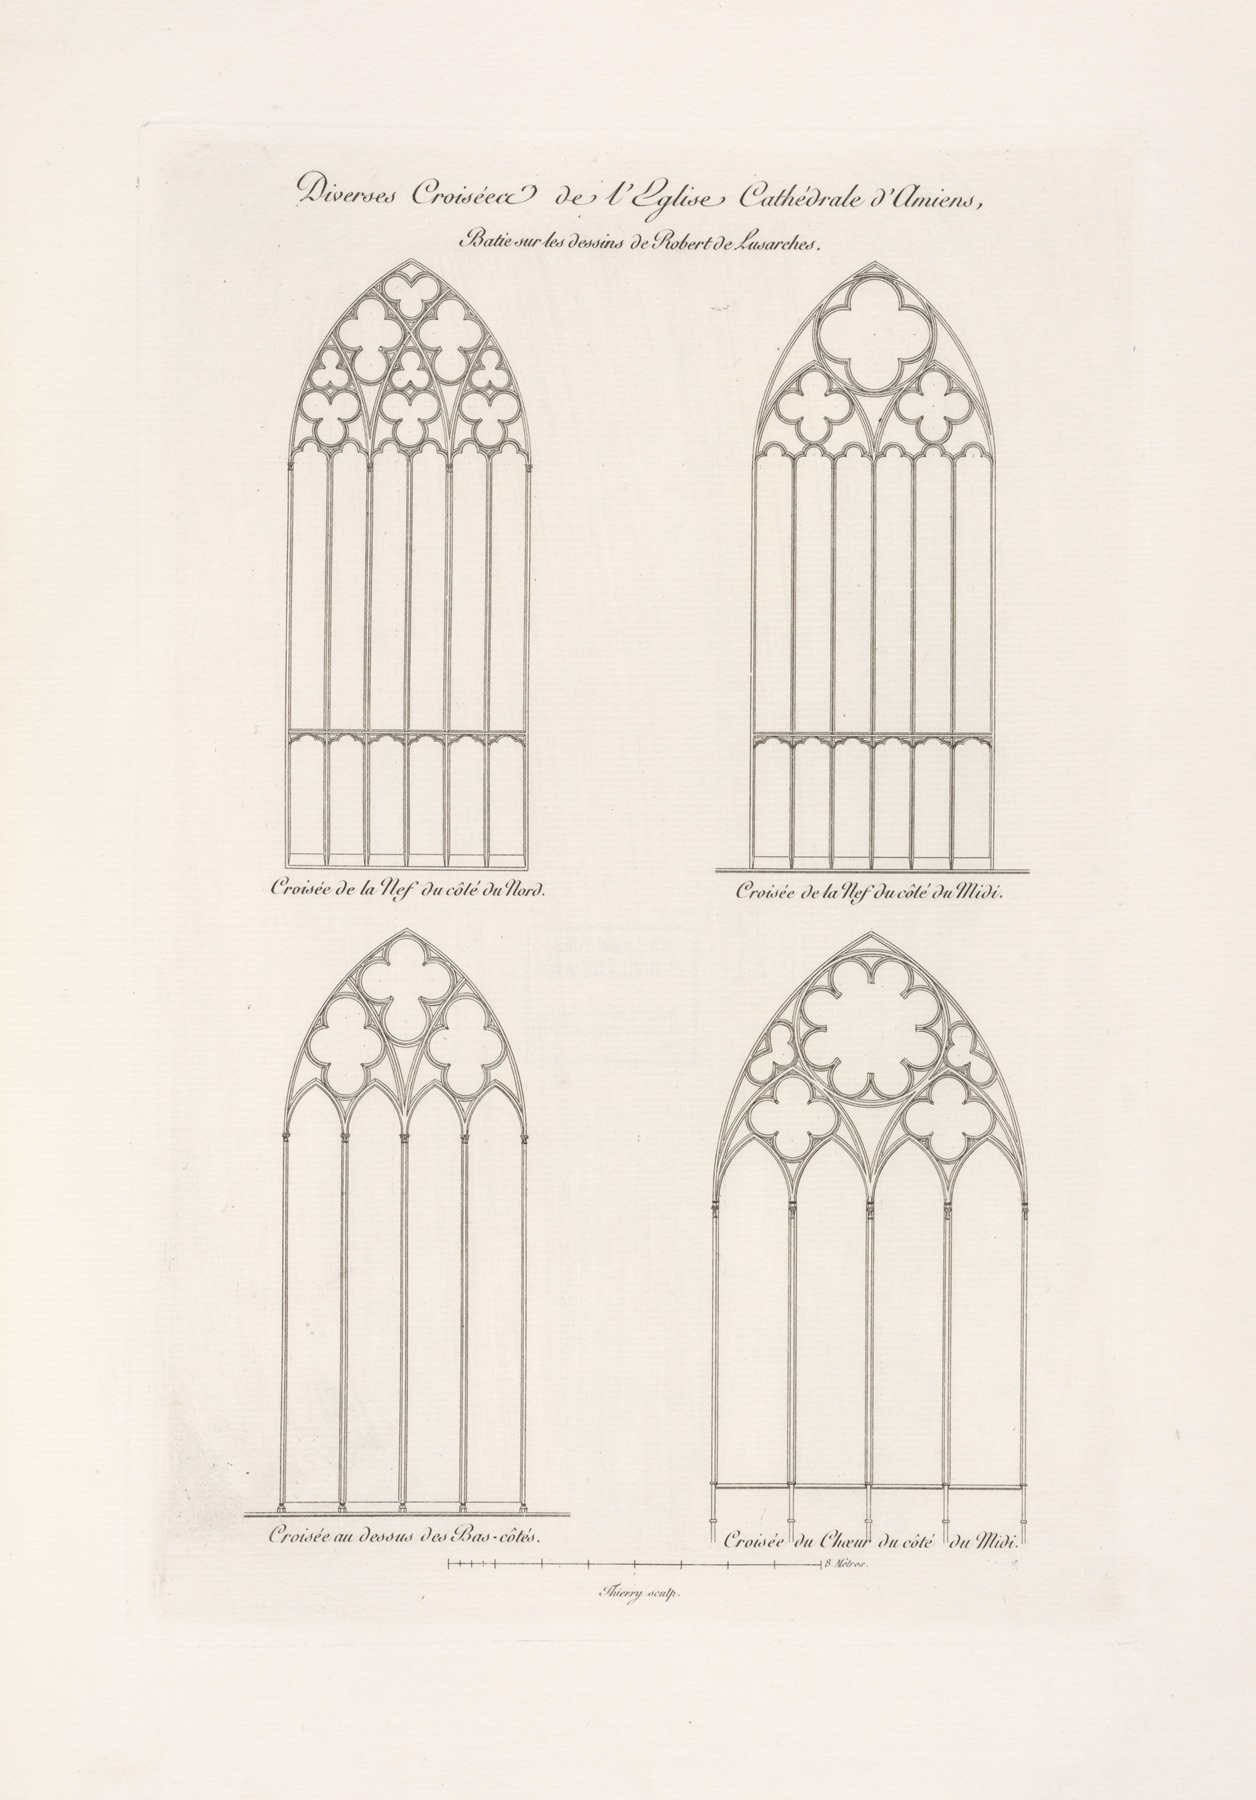 Nicolas Xavier Willemin - Diverses croisées de l’église cathédrale d’Amiens, baties sur les dessins de Robert de Lusarches.